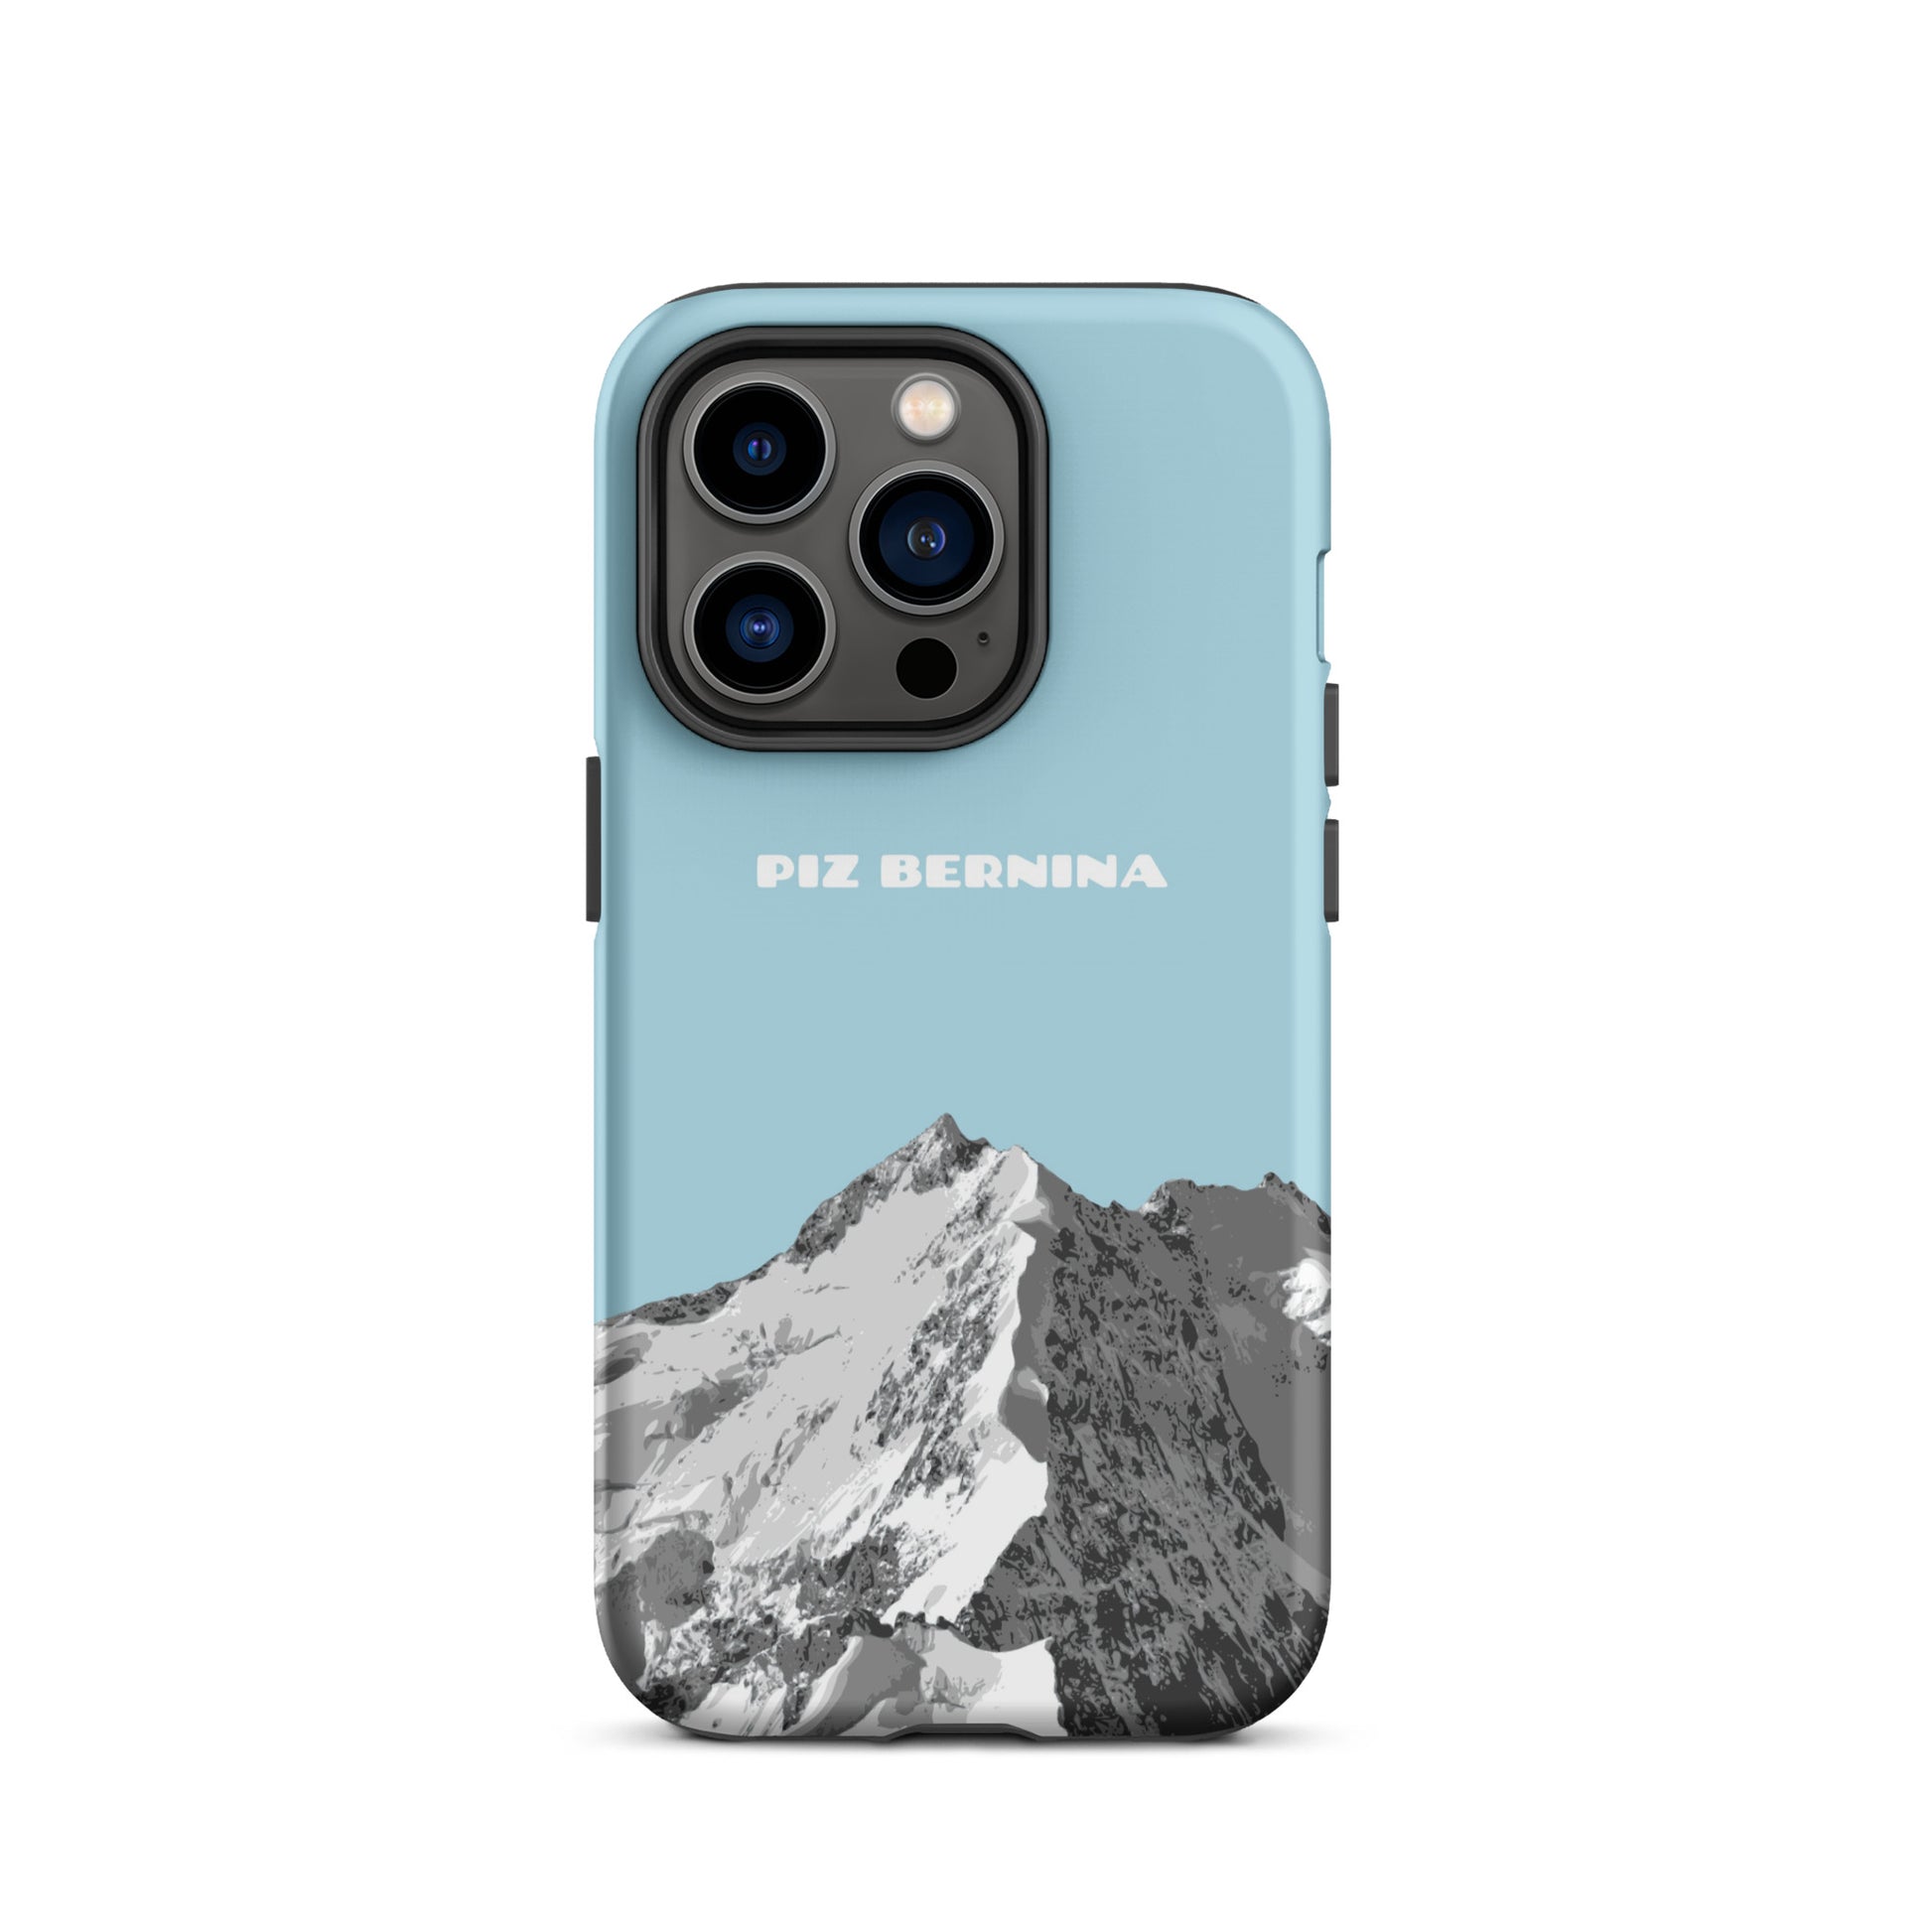 Hülle für das iPhone 14 Pro von Apple in der Farbe Hellblau, dass den Piz Bernina in Graubünden zeigt.